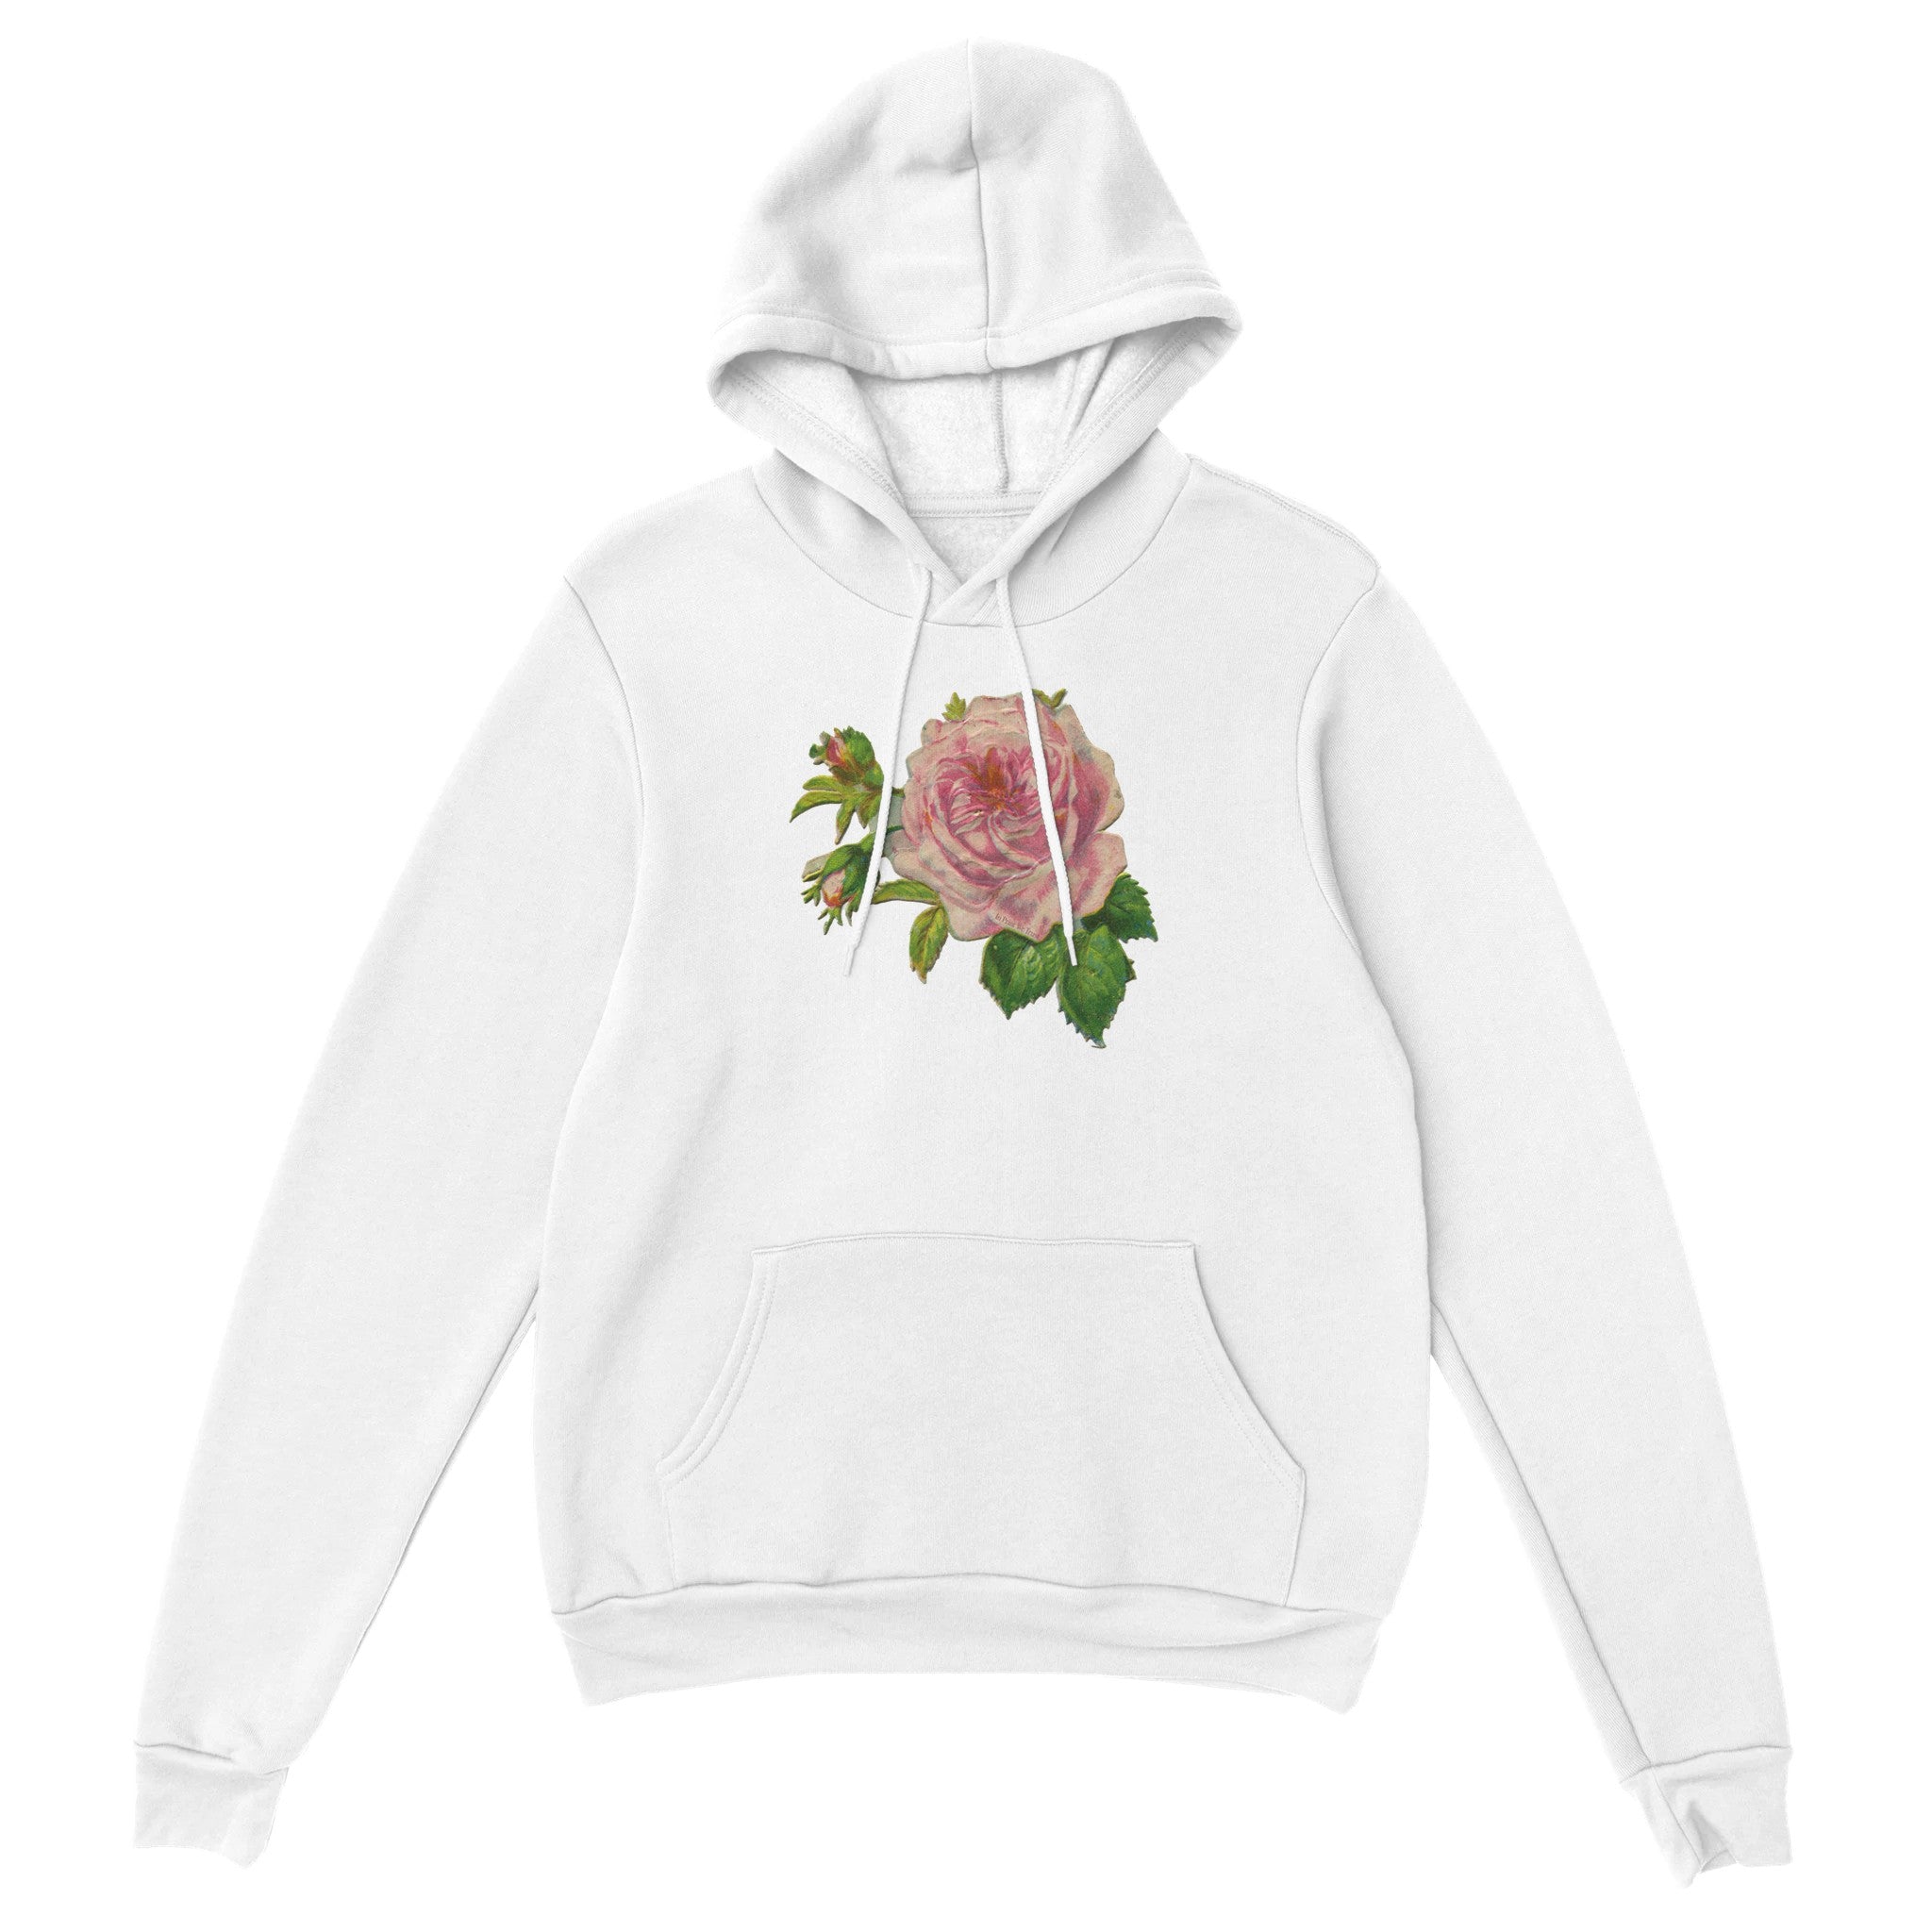 'Bed of Roses' hoodie - In Print We Trust